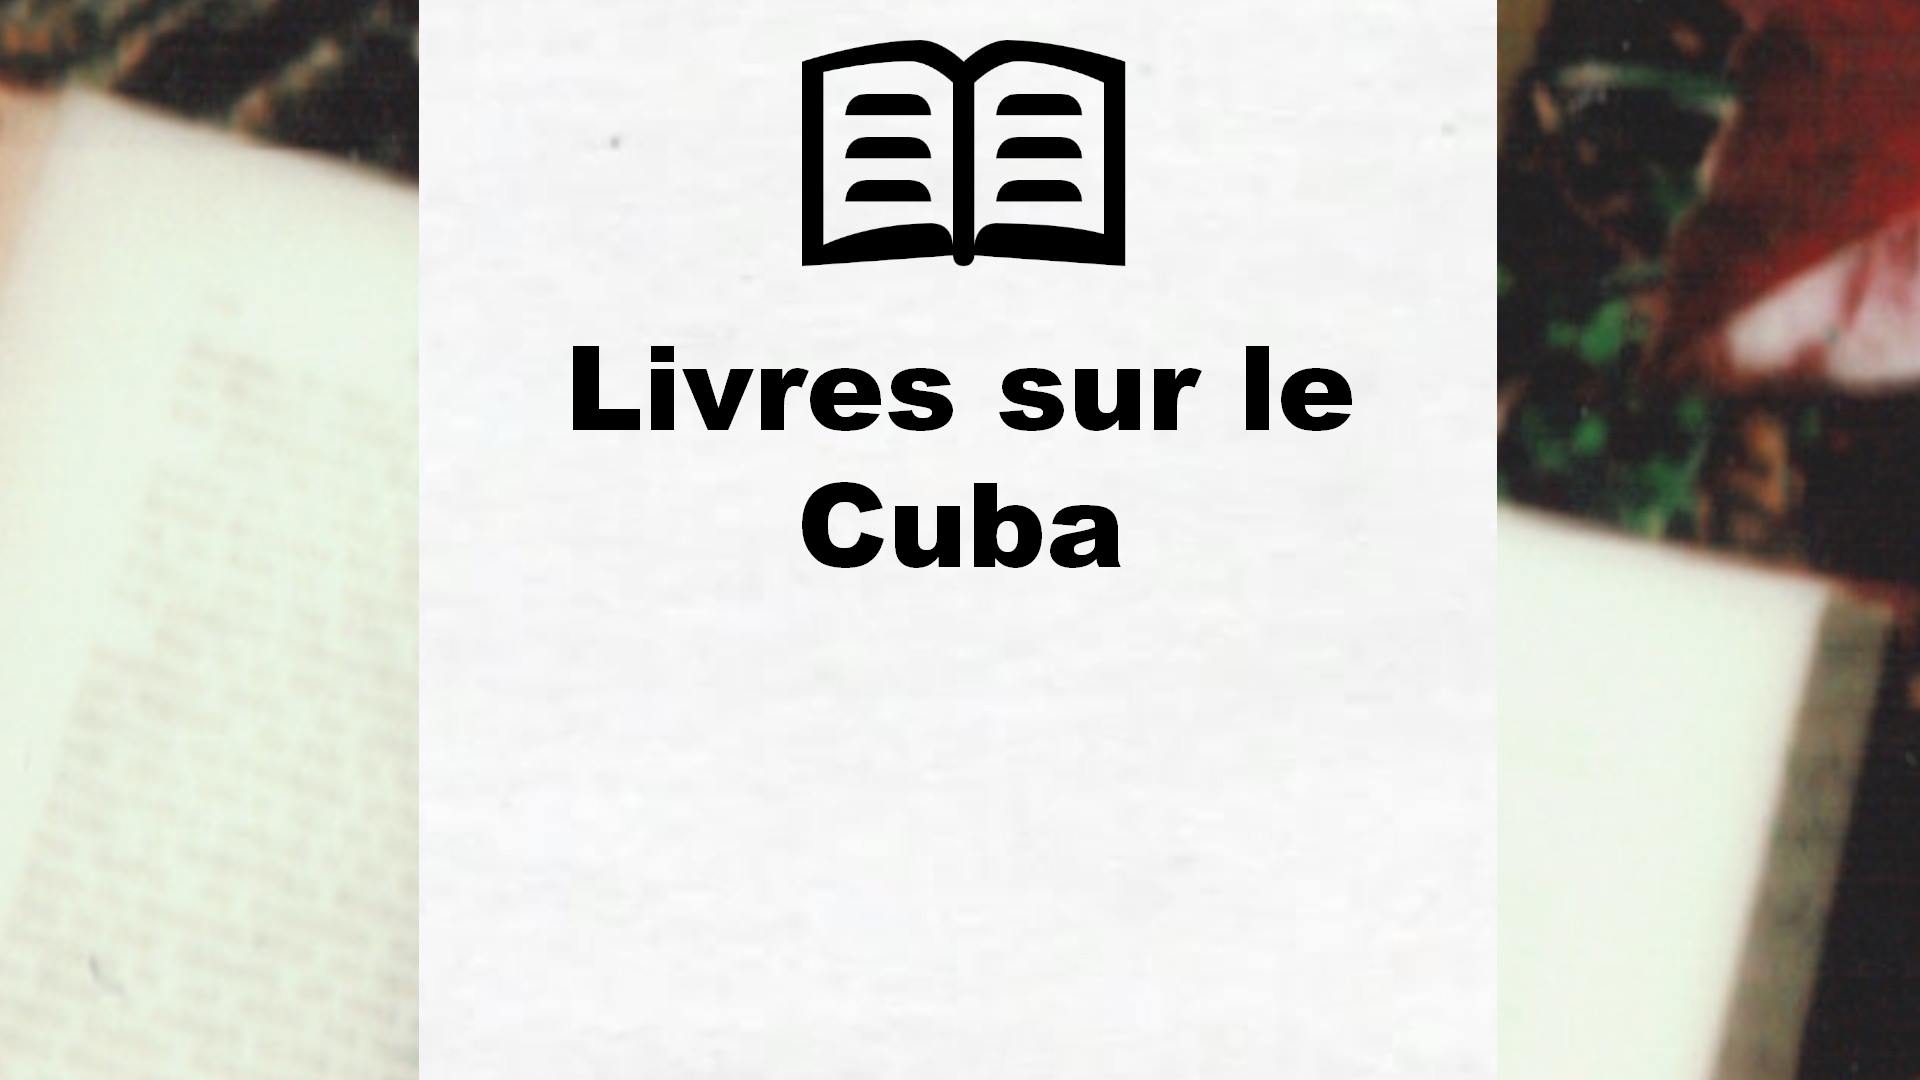 Livres sur le Cuba